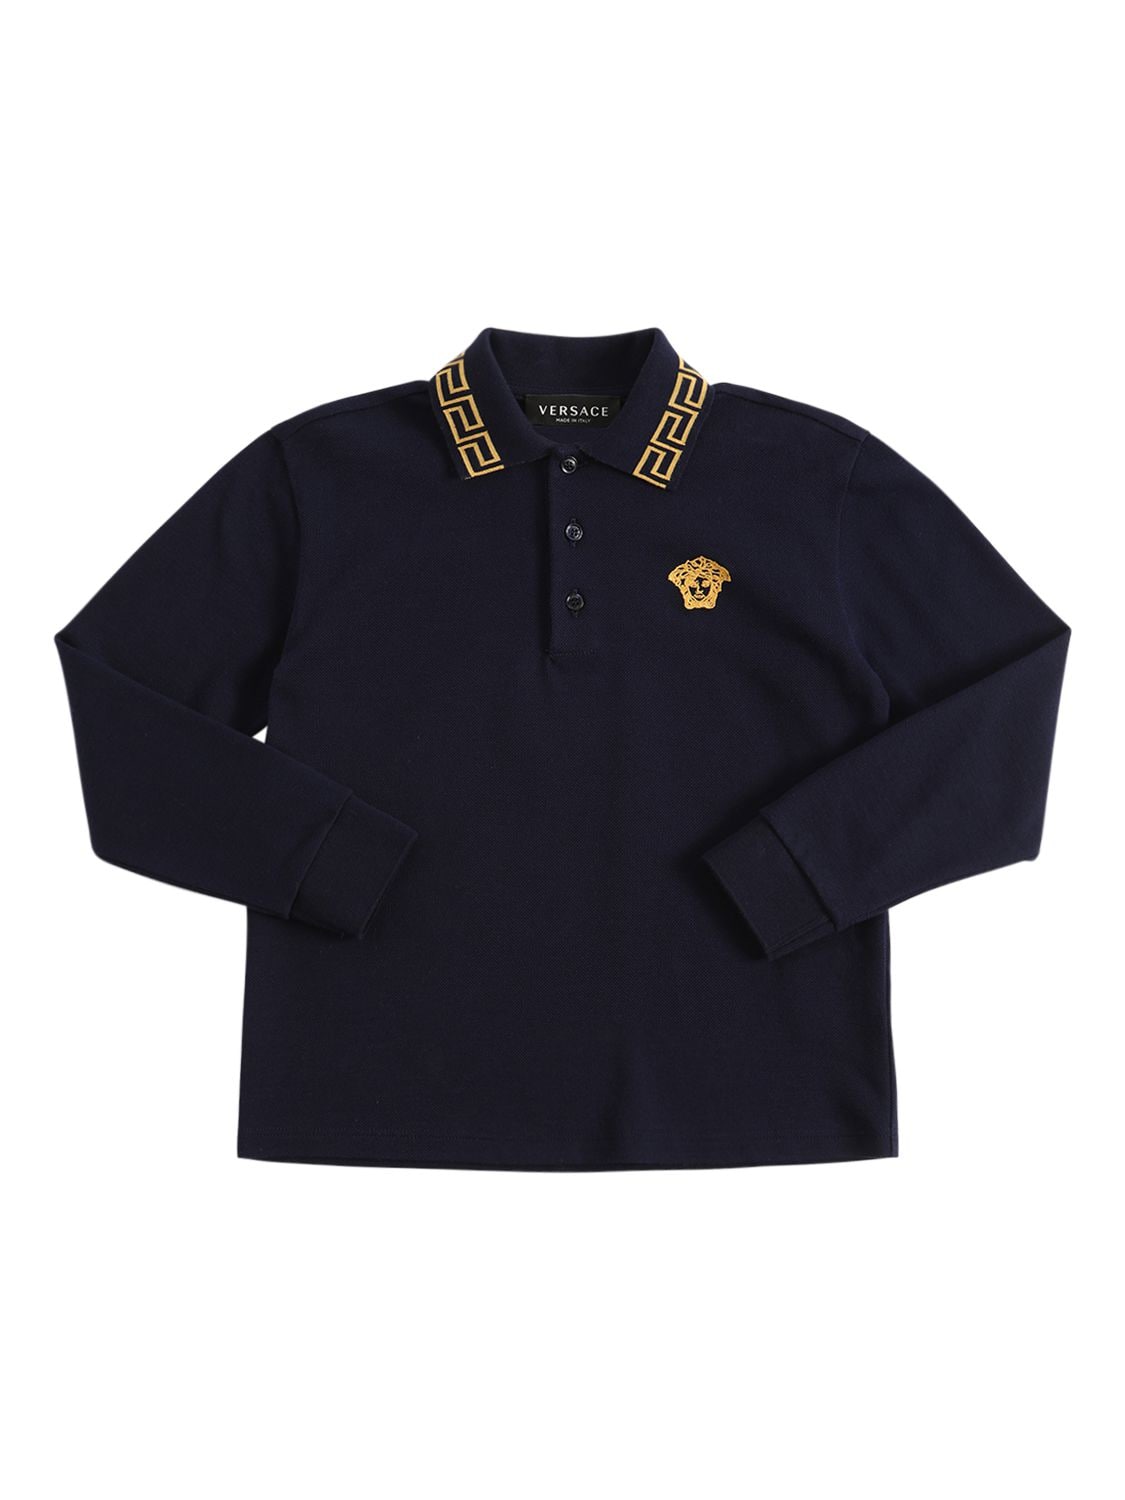 Versace Kids' Logo Cotton Piquet Polo Shirt In Navy